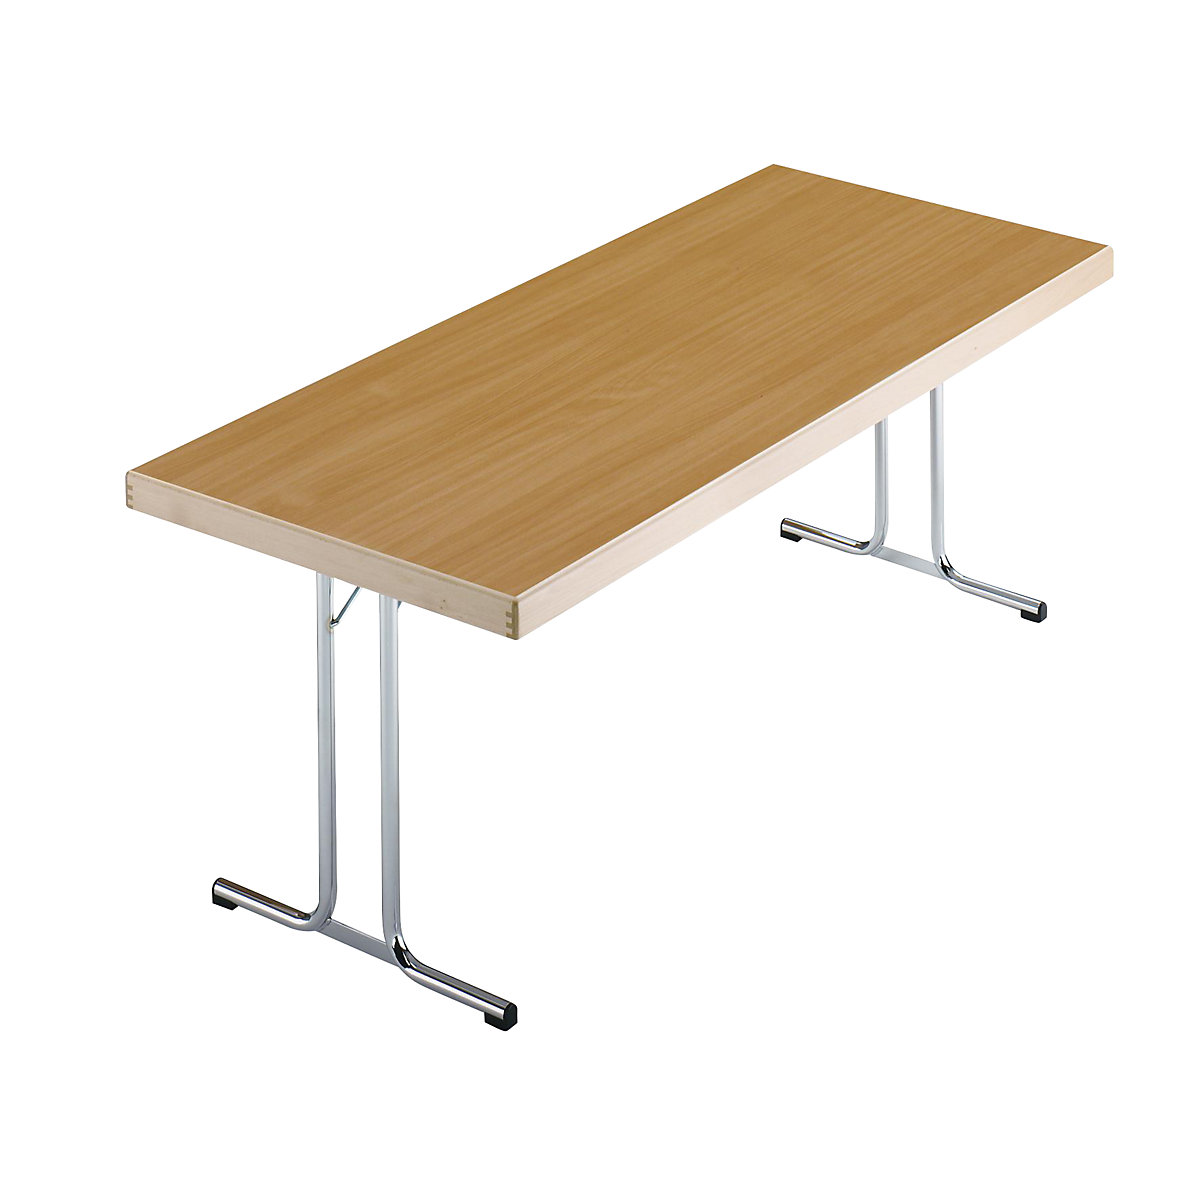 Sklápací stôl, podstavec s dvojitými nohami tvaru T, 1500 x 800 mm, podstavec pochrómovaný, doska vzor buk-14